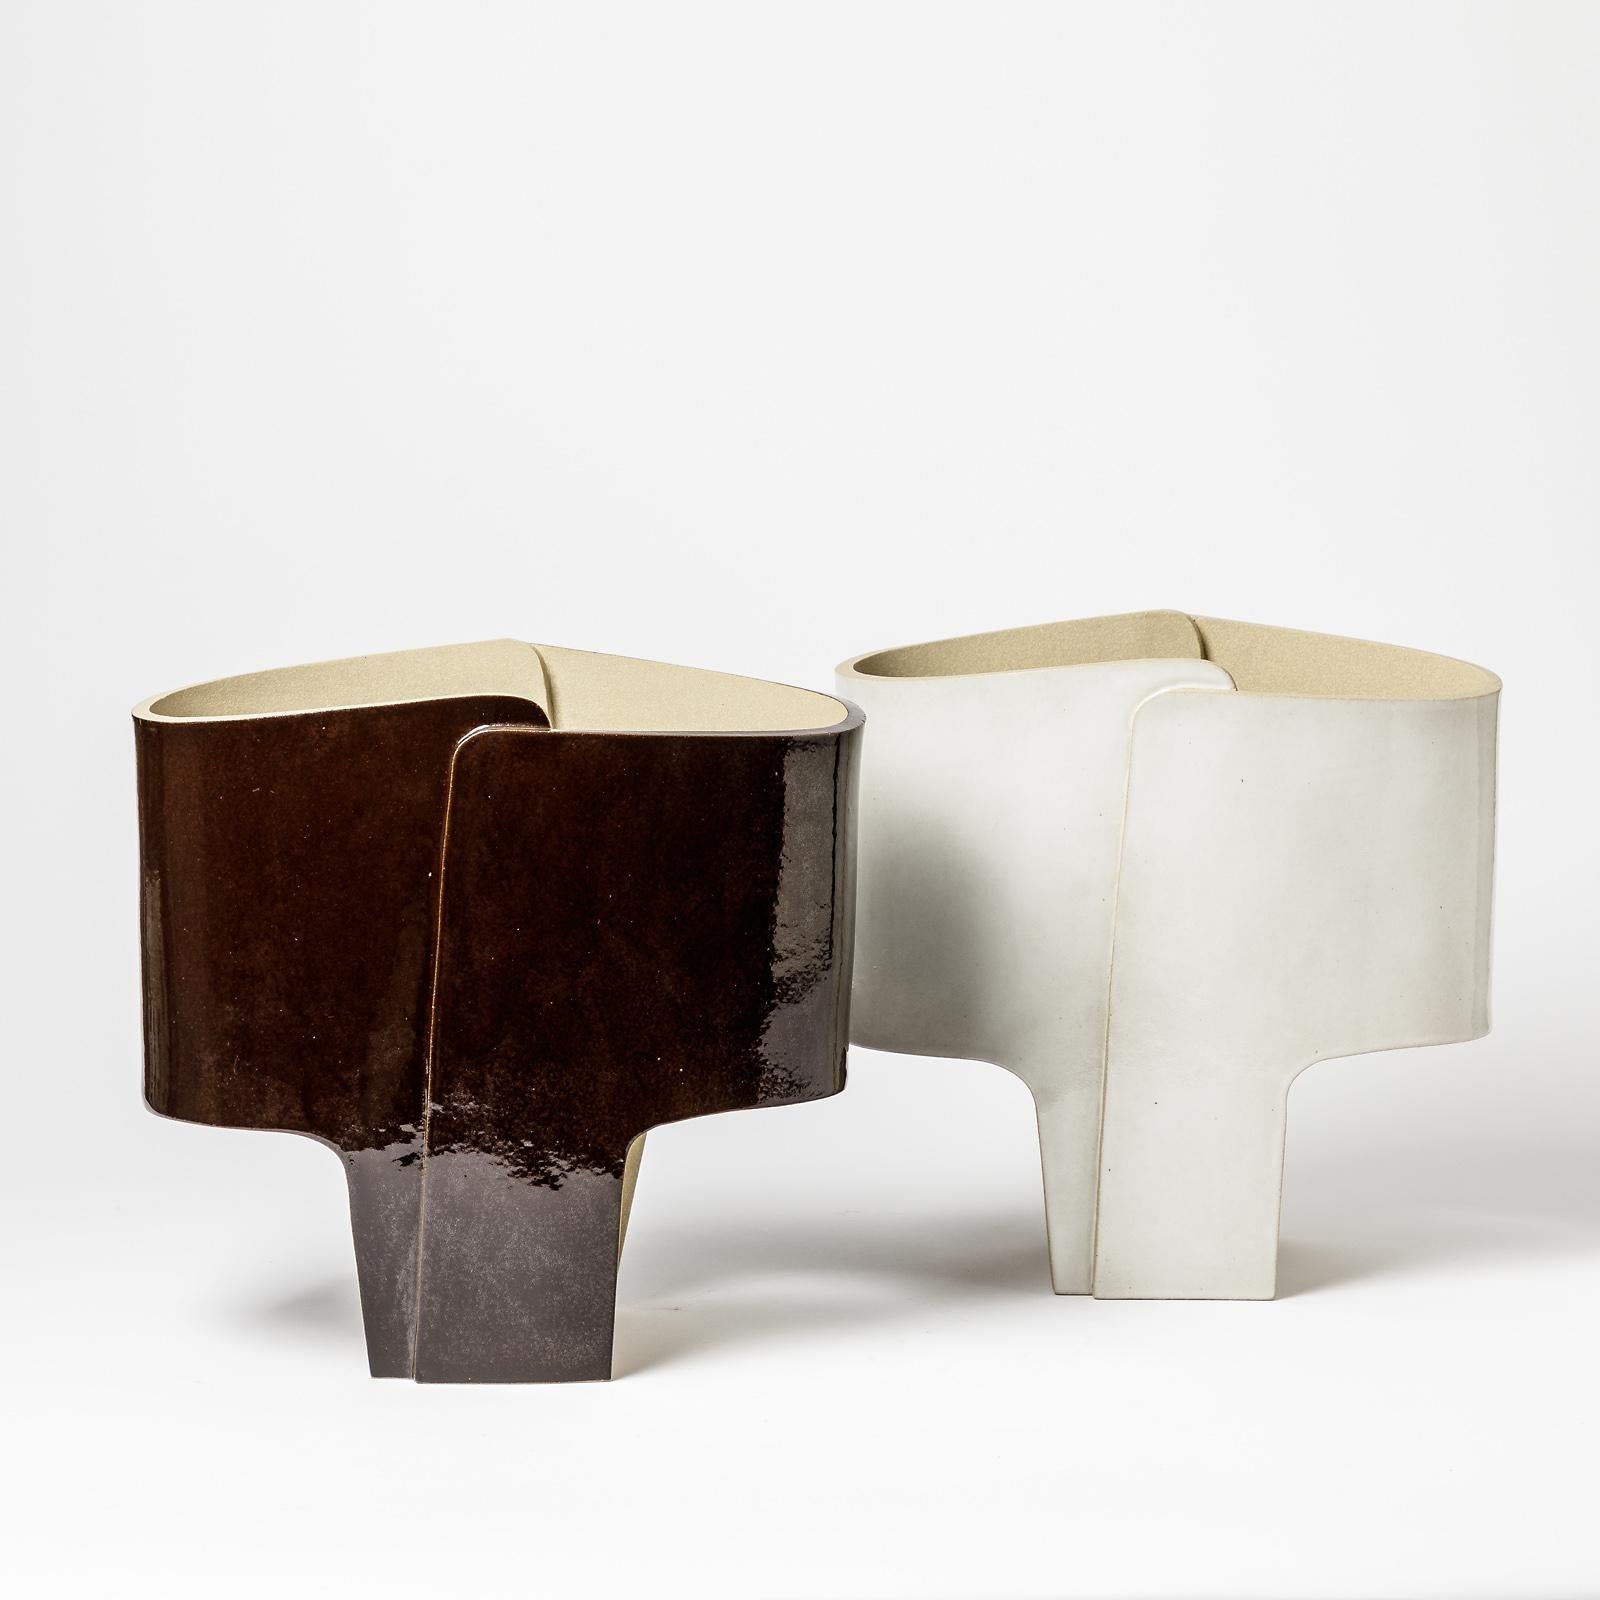 Ein Paar Keramik-Tischlampen mit gebräuntem Weißglasurdekor von Denis Castaing.
Unter dem Sockel signiert.
Wird mit einer europäischen elektrischen Anlage verkauft.
2020.